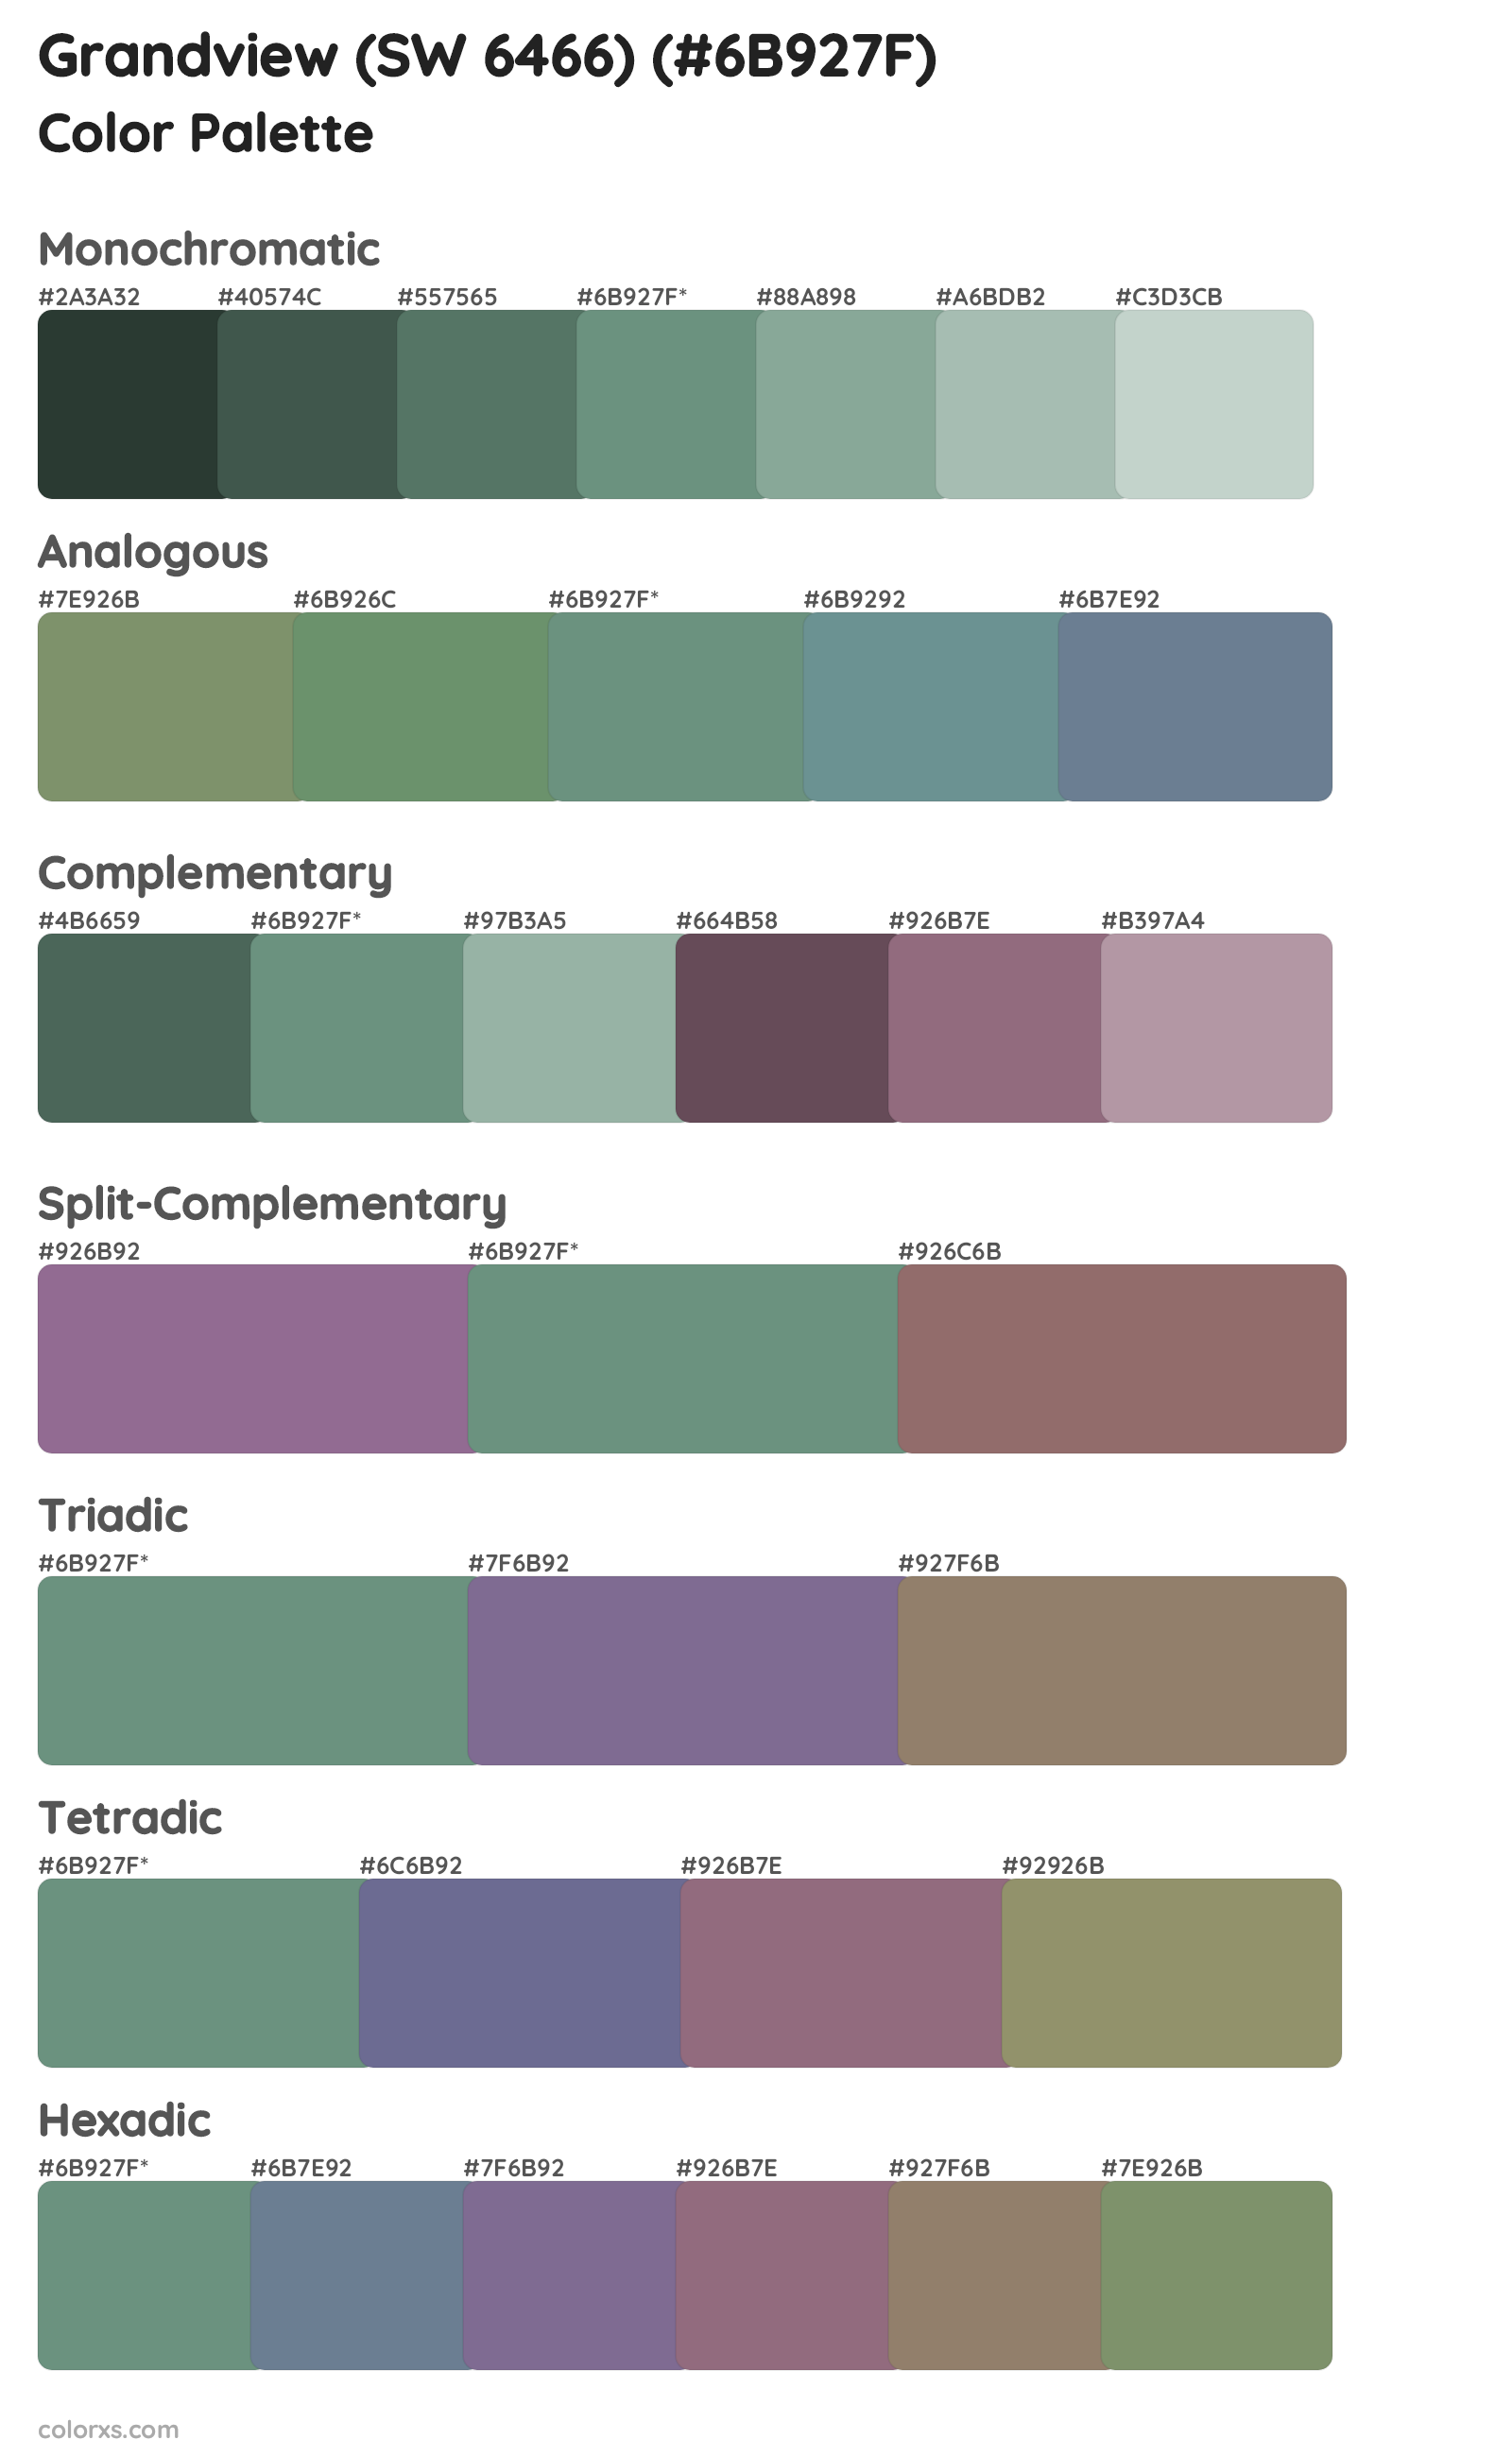 Grandview (SW 6466) Color Scheme Palettes